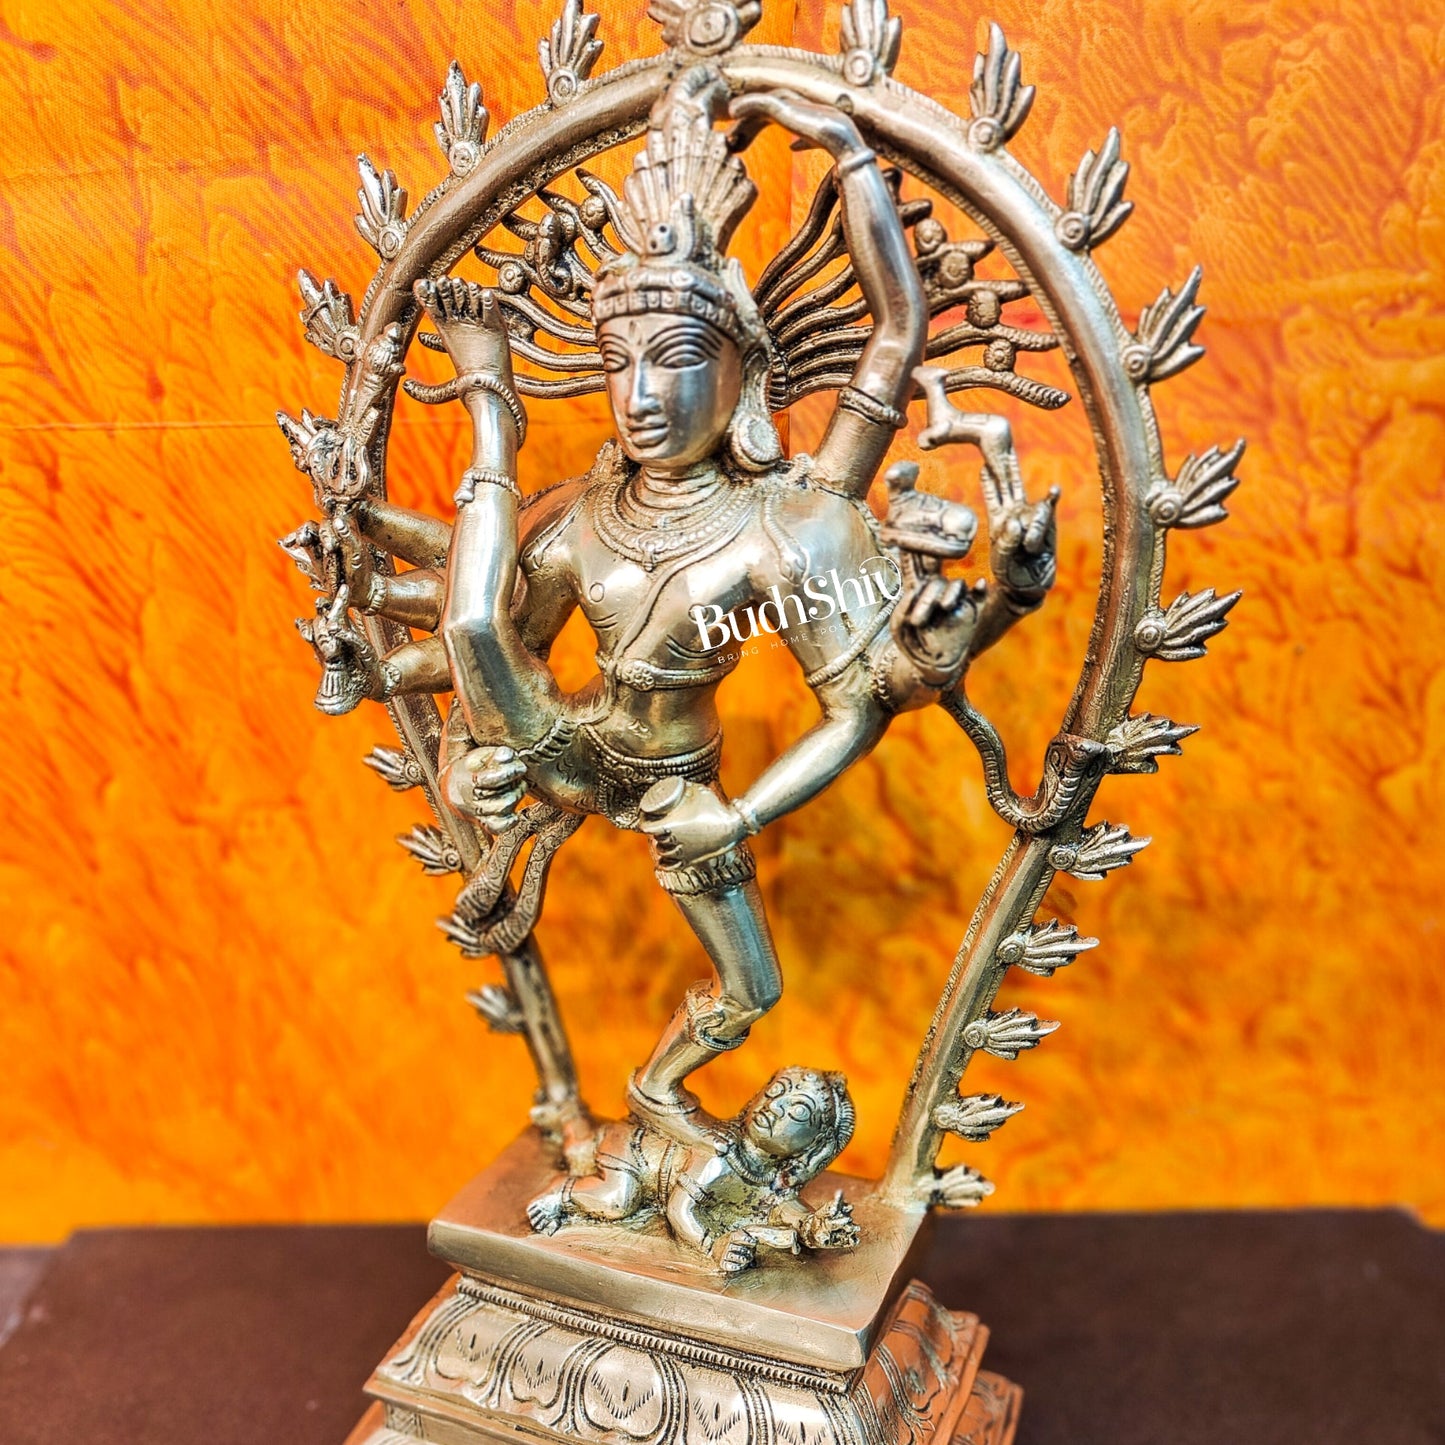 Brass Urdhawa Tandava Nataraja 18" - Budhshiv.com